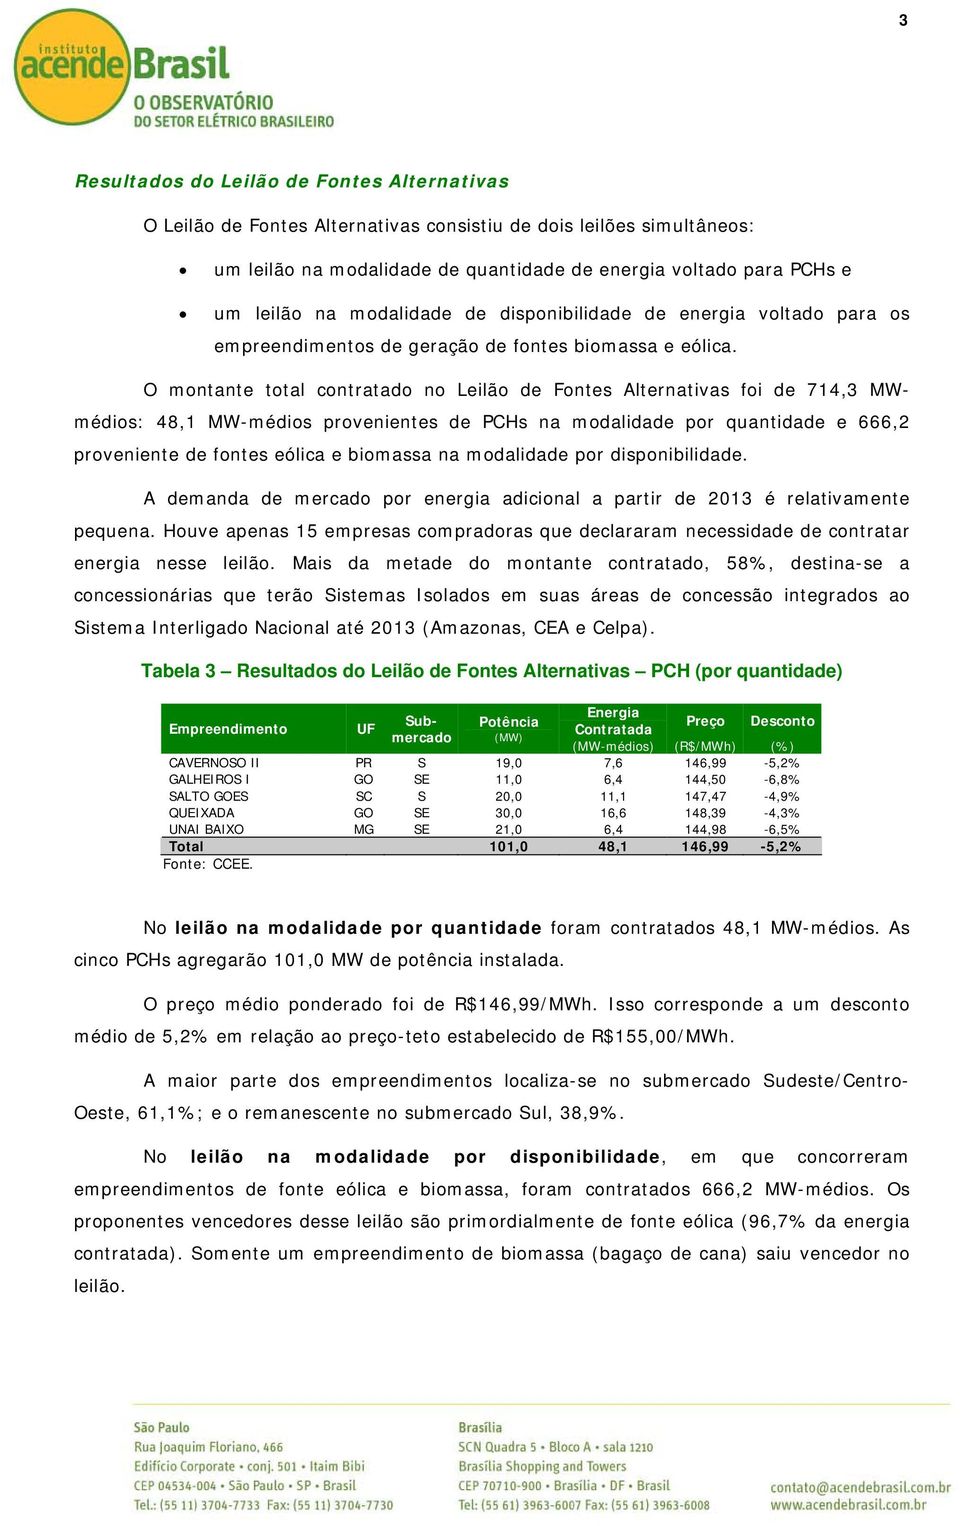 O montante total contratado no Leilão de Fontes Alternativas foi de 714,3 MWmédios: 48,1 MW-médios provenientes de PCHs na modalidade por quantidade e 666,2 proveniente de fontes eólica e biomassa na